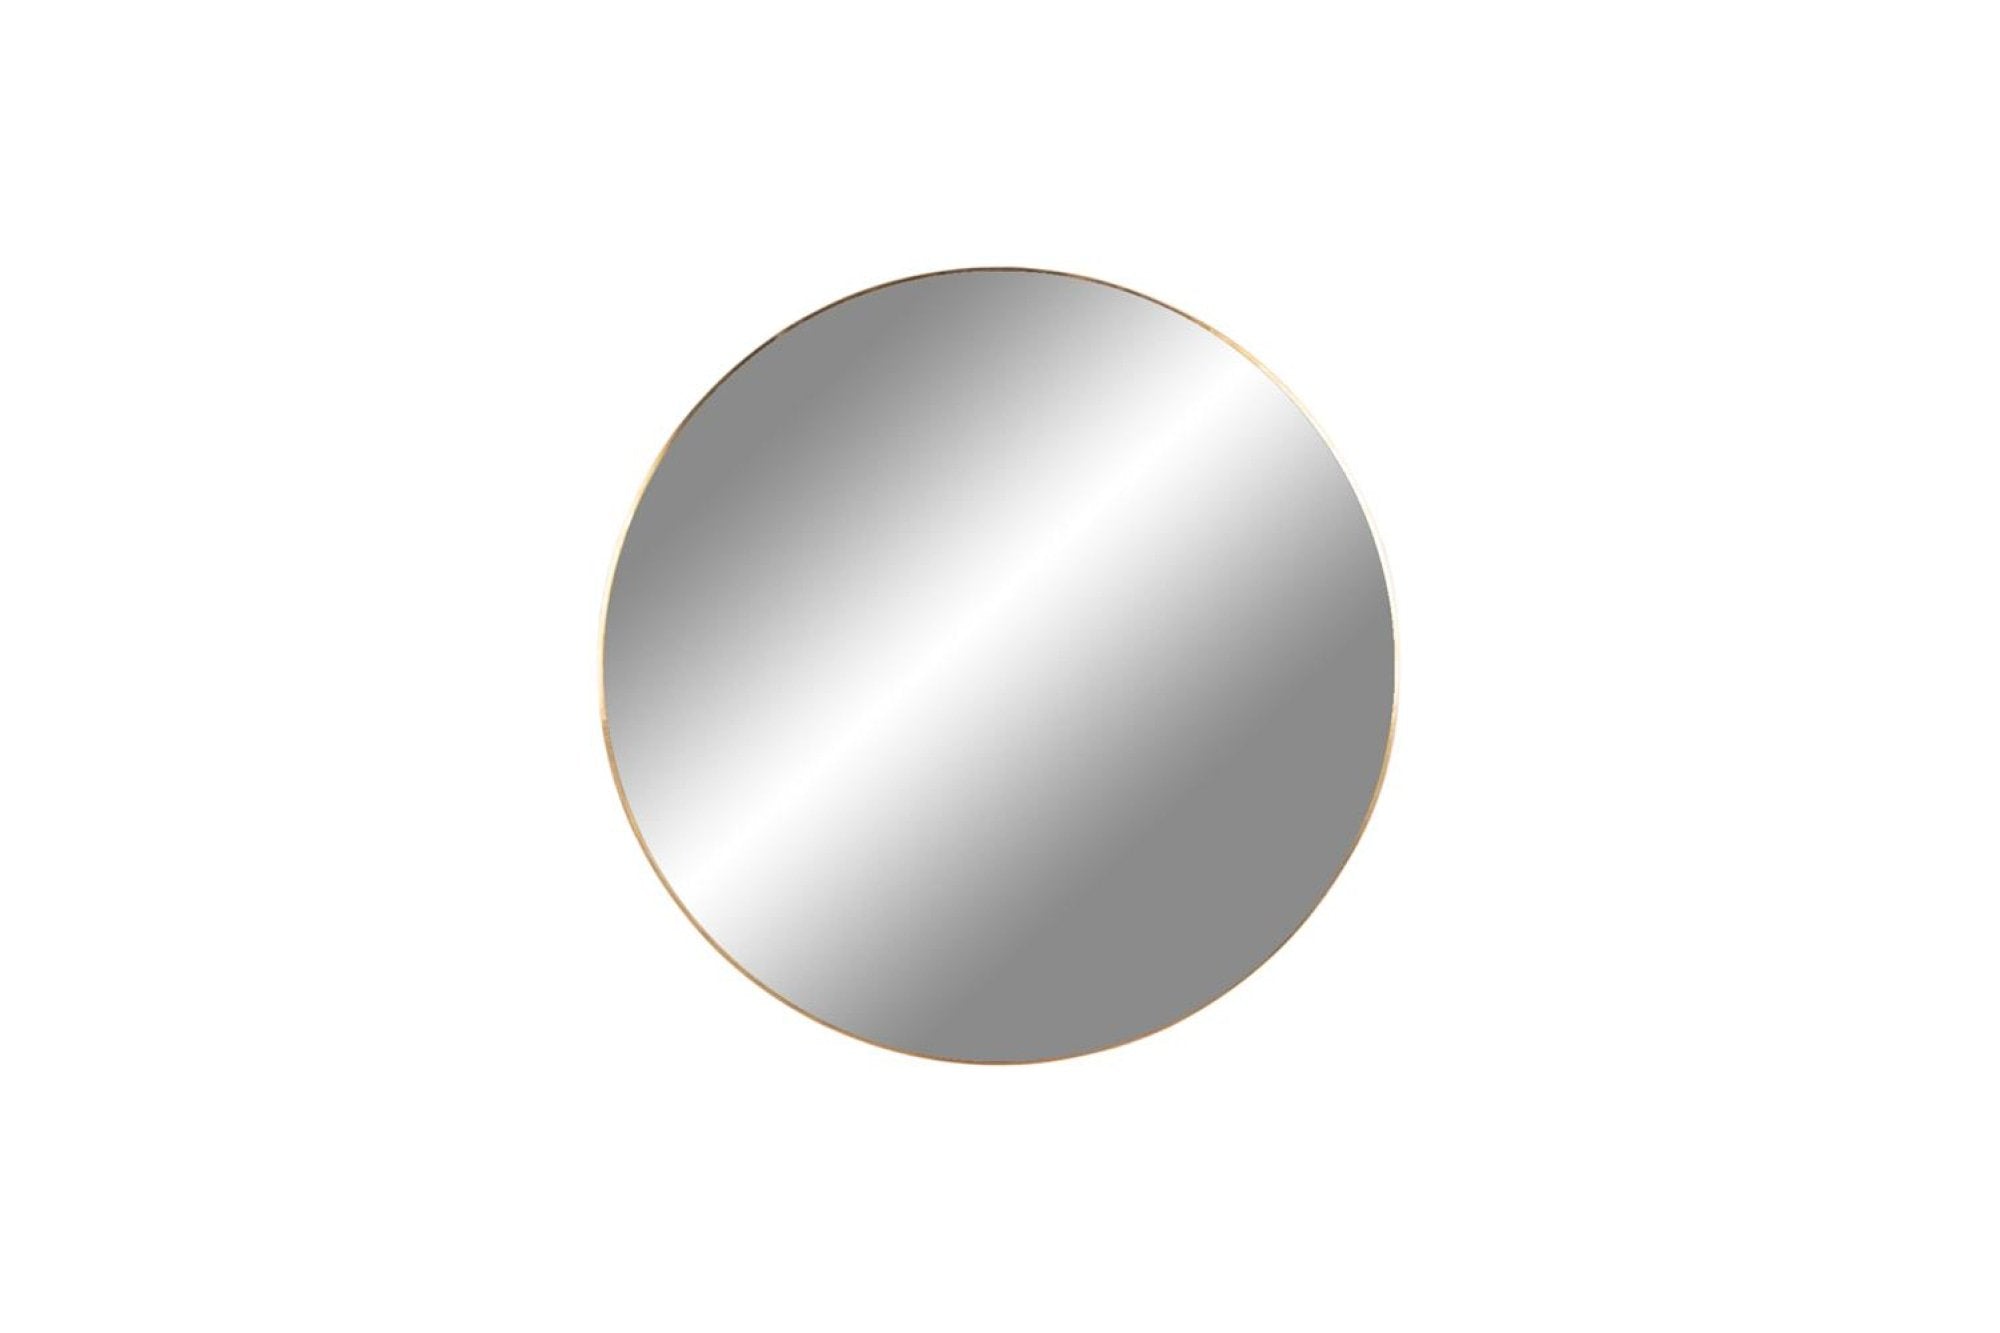 SÉRÜLT - JERSEY kerek arany acél tükör 40cm- SZÉPSÉGHIBÁS